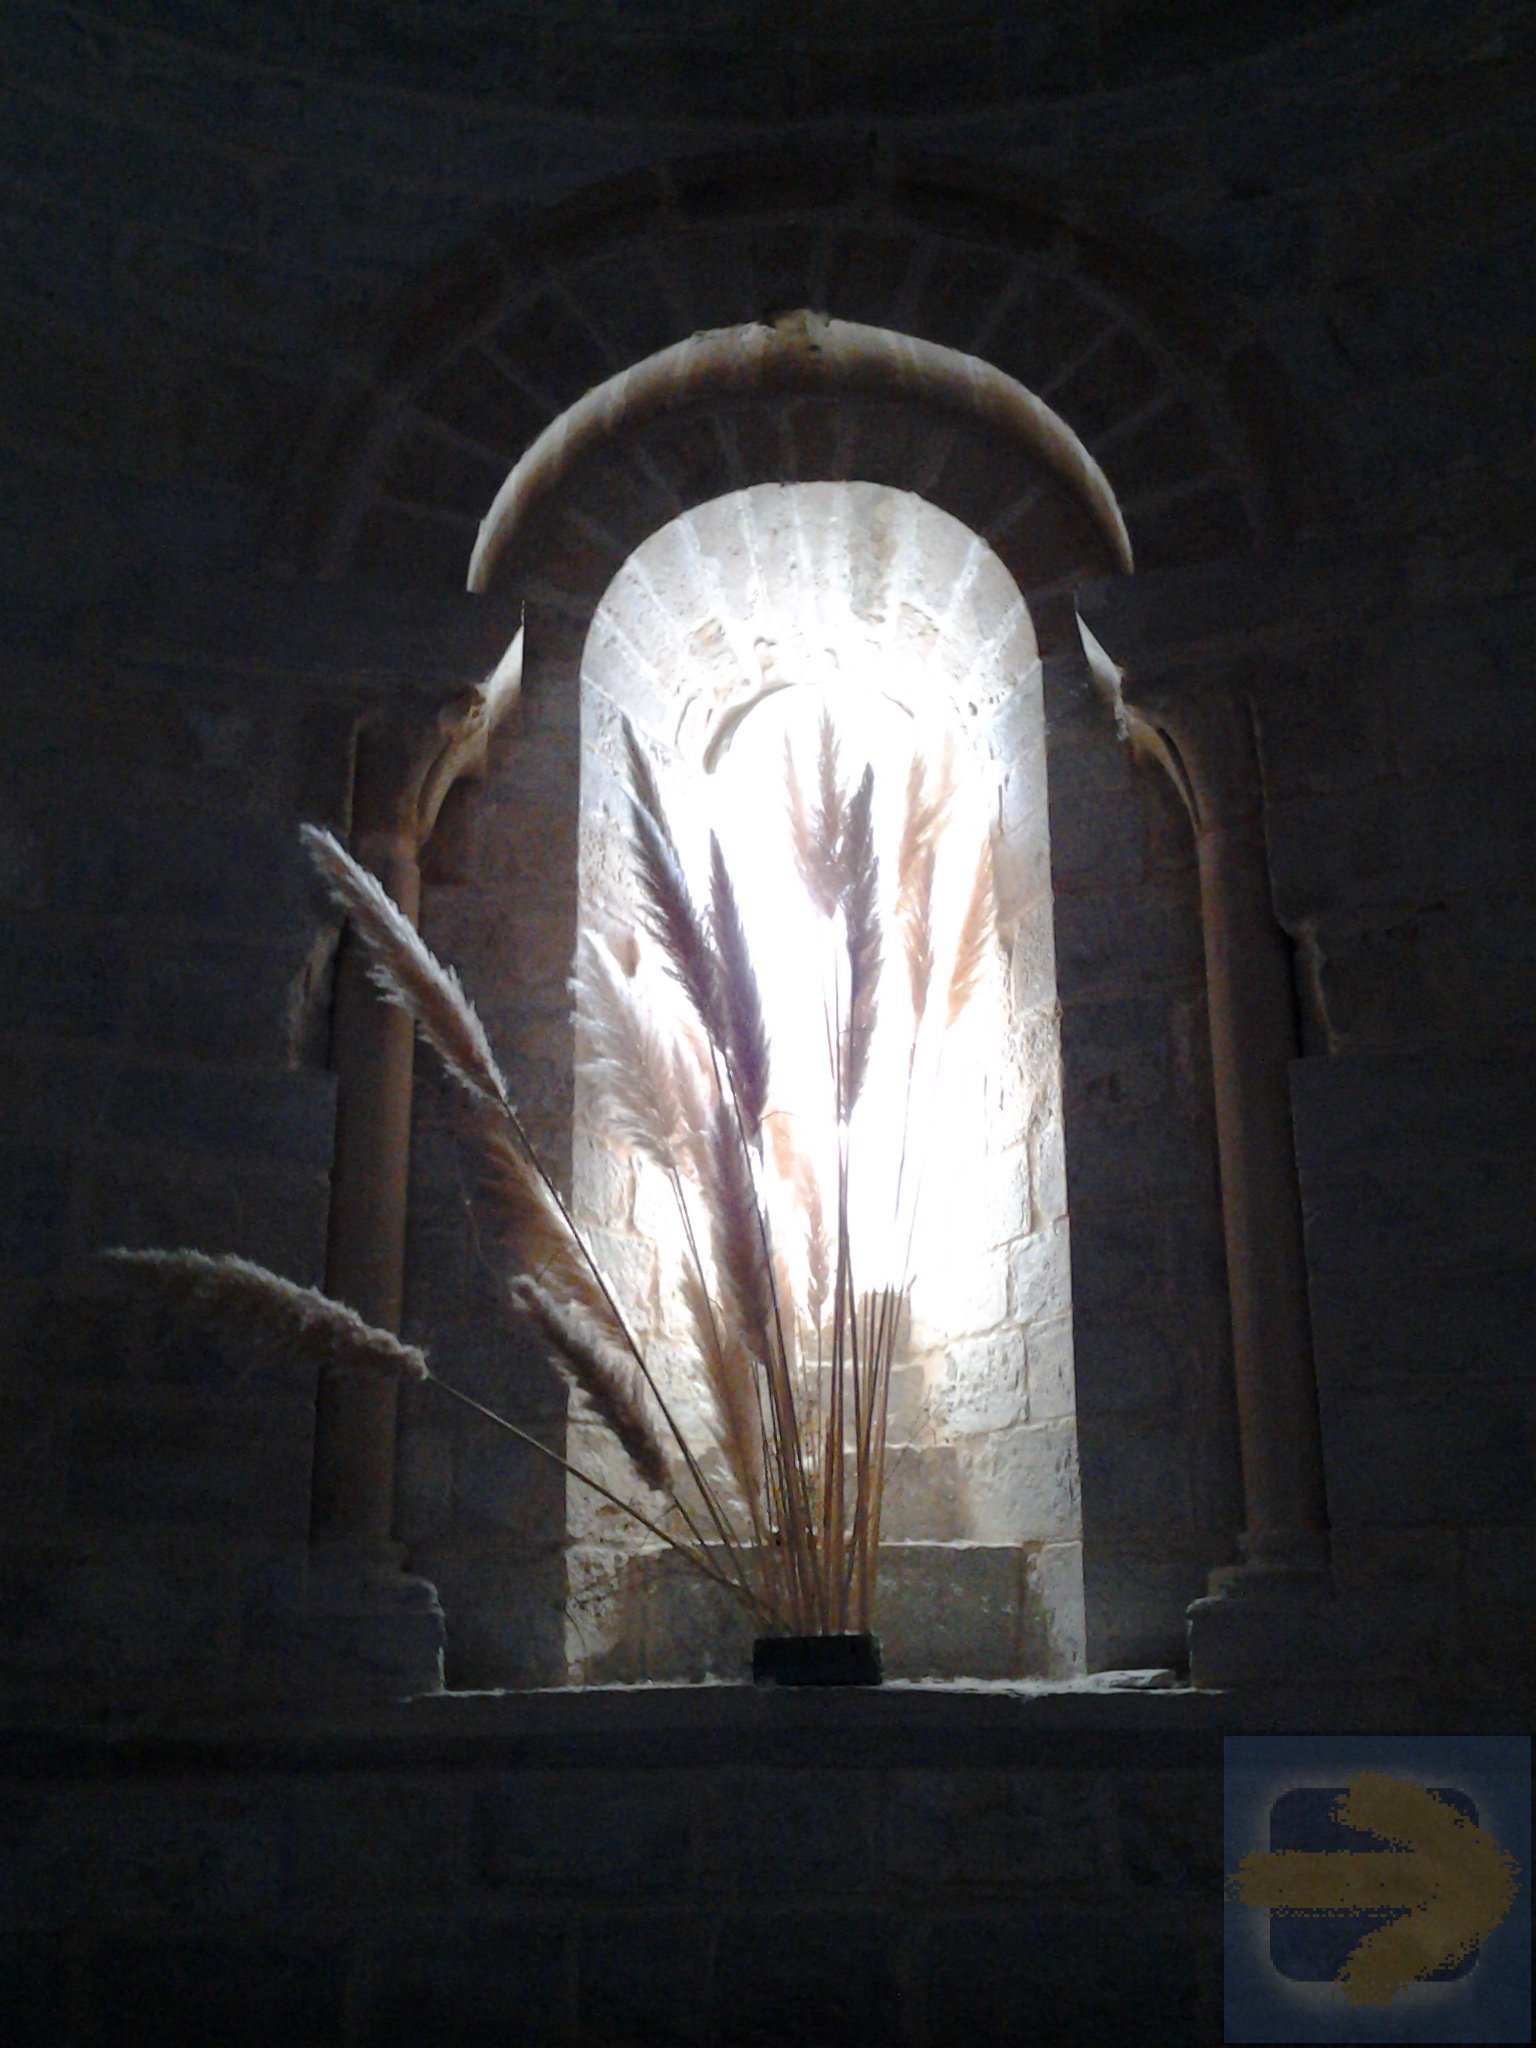 Fern light up through an Alabaster window